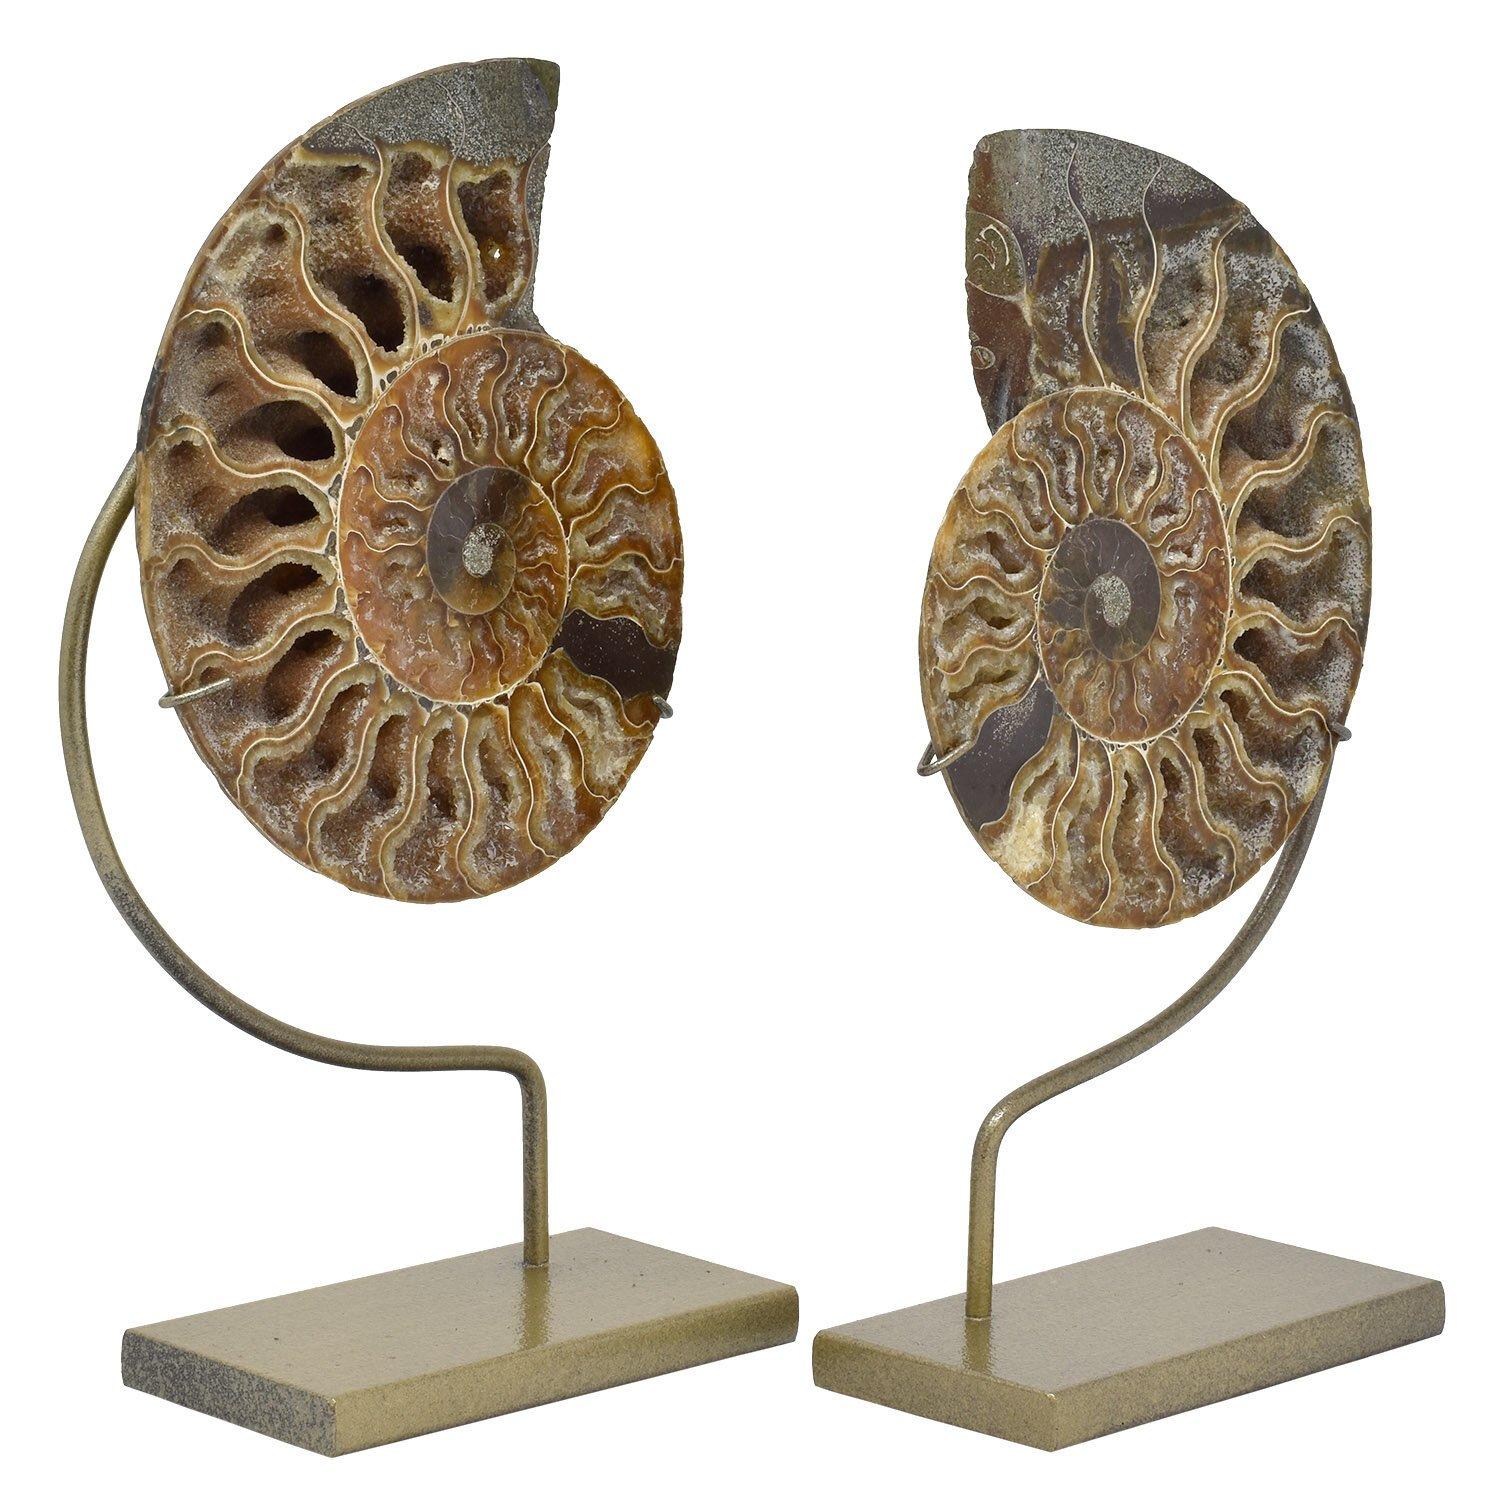 Gepaartes Paar gespaltene Ammoniten fossile Mineralstufen

Jura - Kreidezeit, 200 - 145 Millionen Jahre alt
Maße: 5 x 4,25 x 0,5 in. / 13 x 10 x 1,5 cm
Höhe auf kundenspezifischen Display-Ständern: 8 in. / 20 cm

Ein gespaltenes